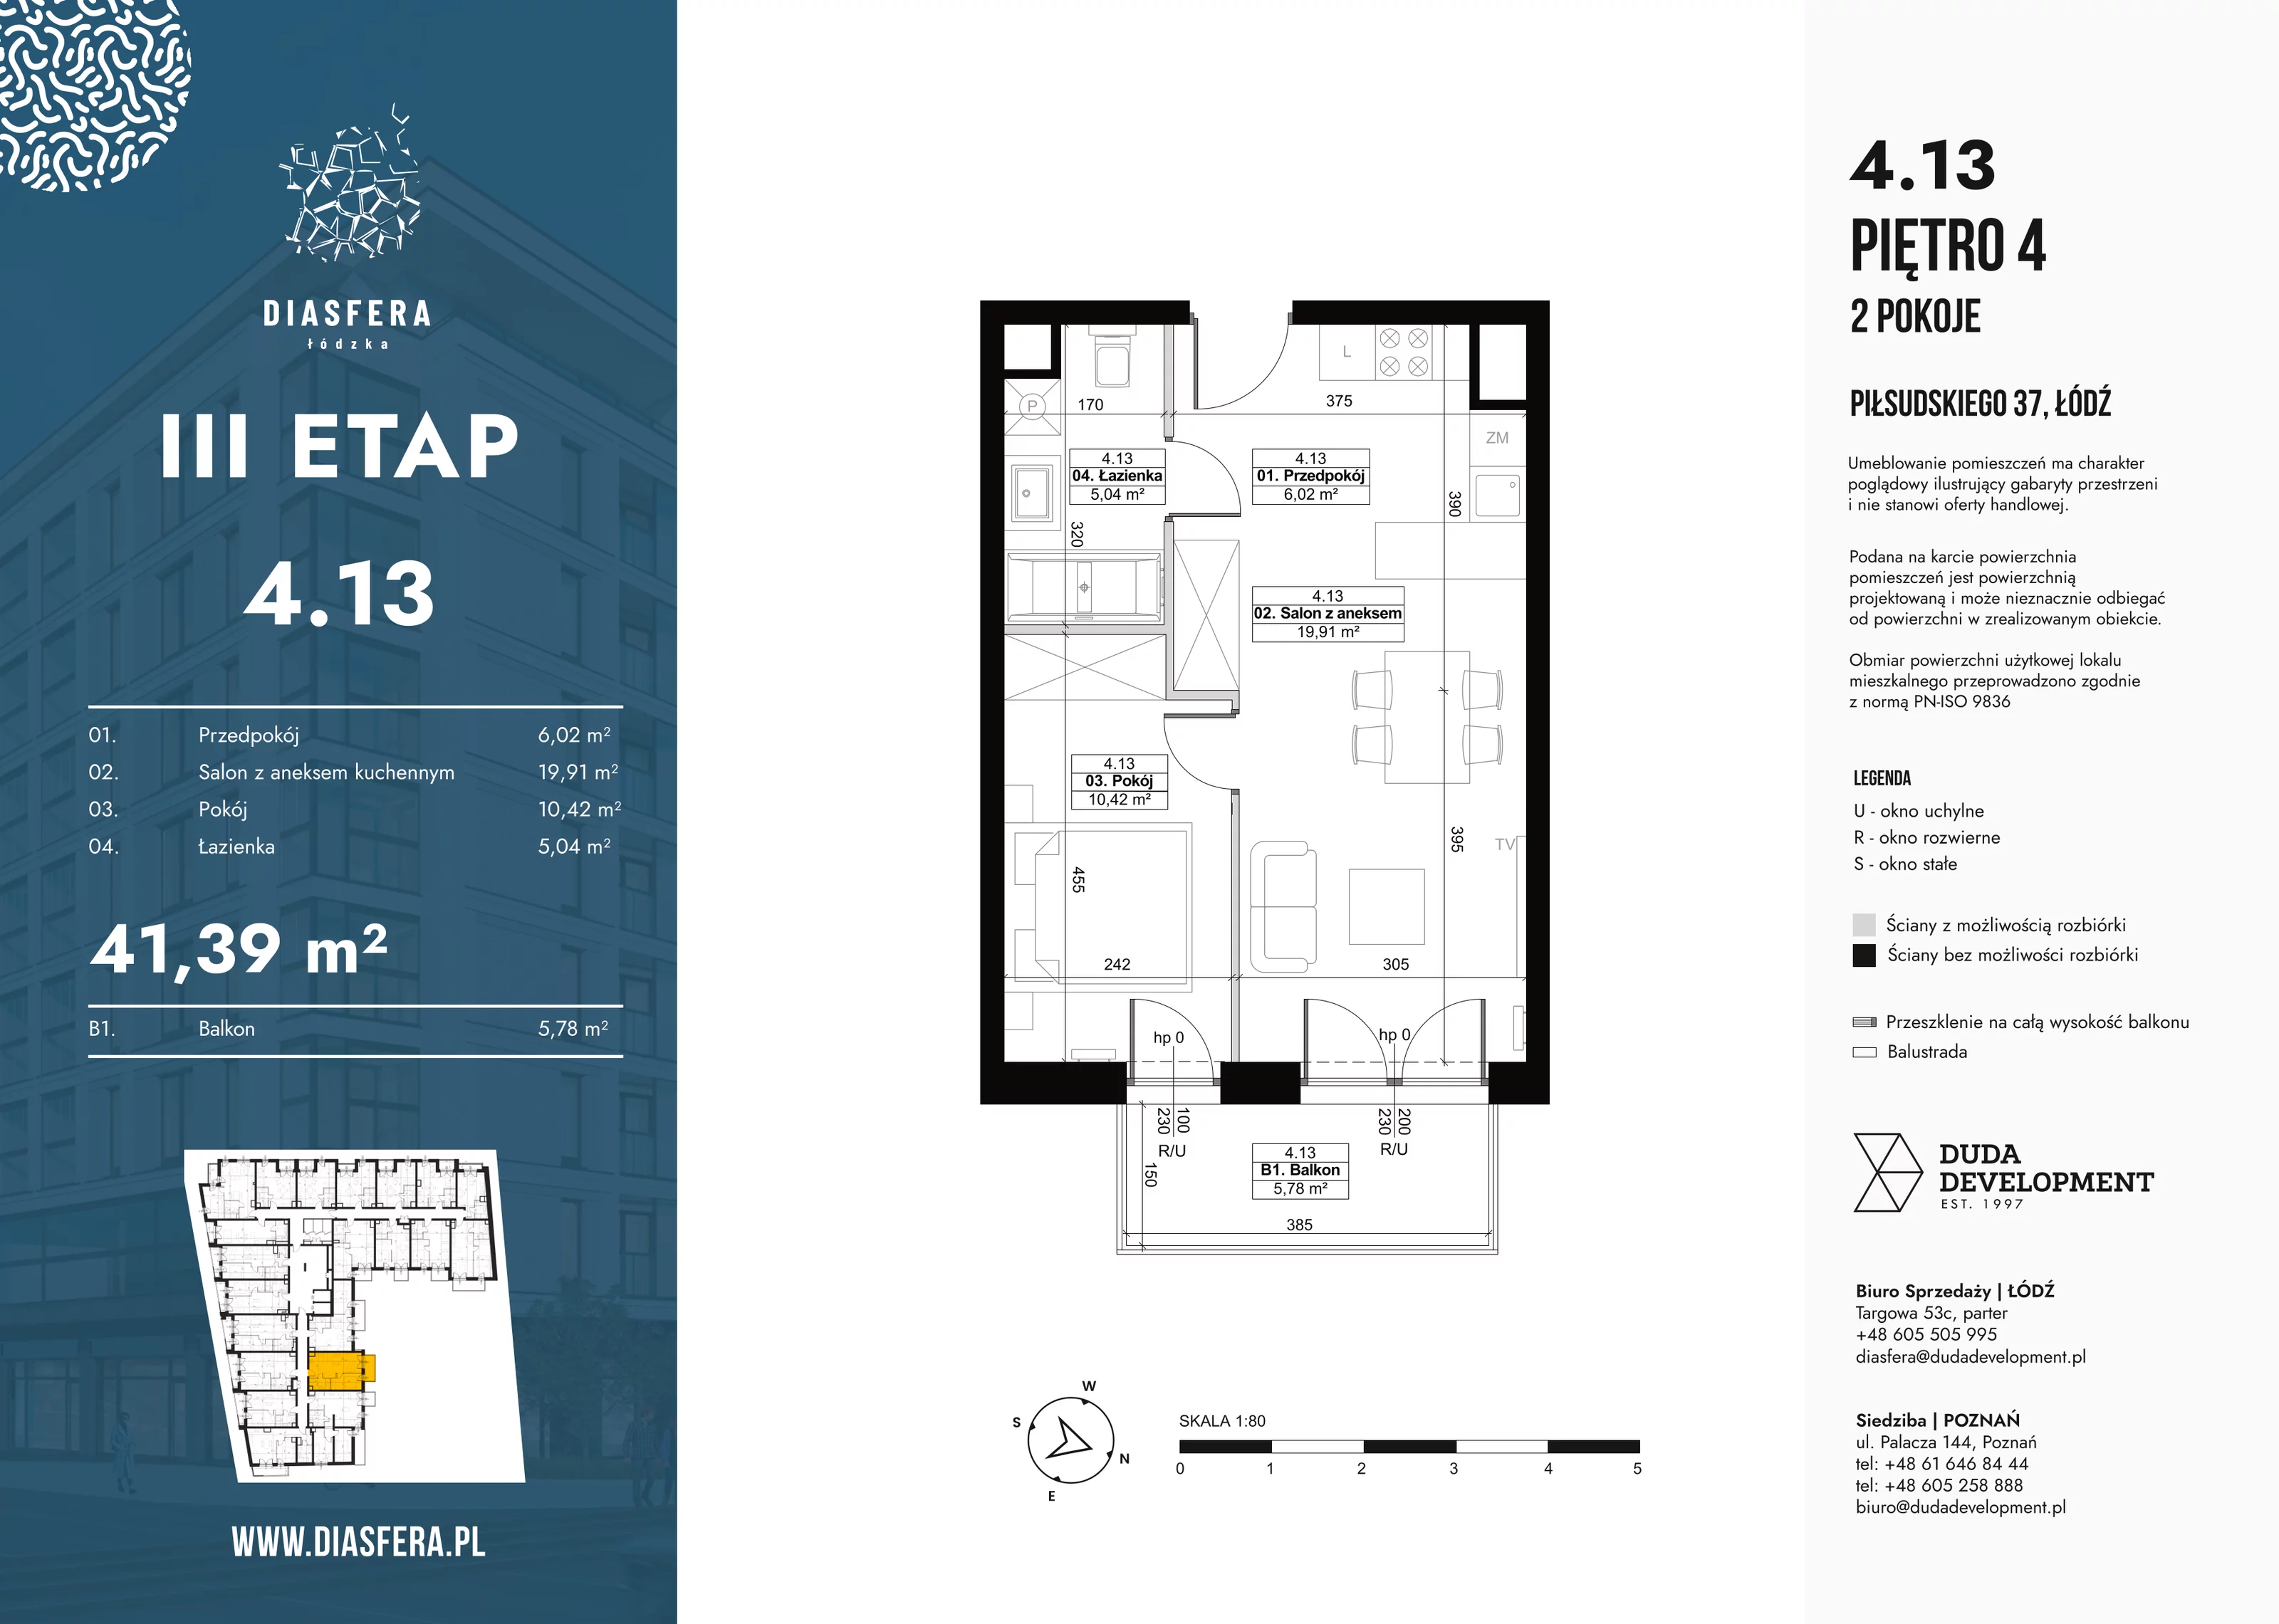 Mieszkanie 41,39 m², piętro 4, oferta nr 4_13, Diasfera III, Łódź, Śródmieście, al. Piłsudskiego 37